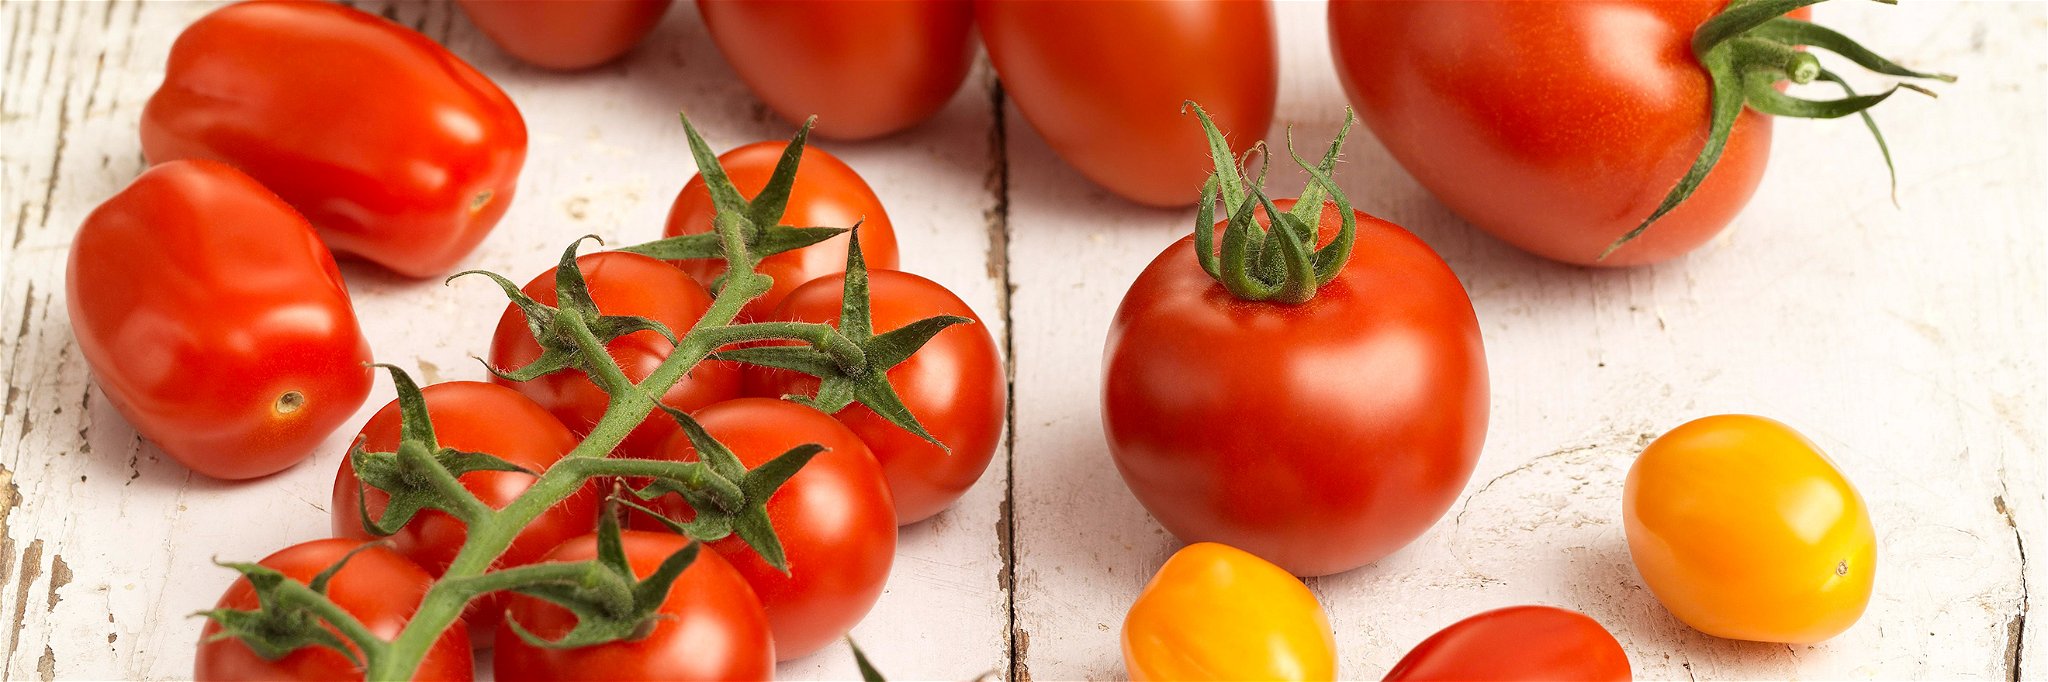 Die Tomate bietet vielfältigen Genuss.